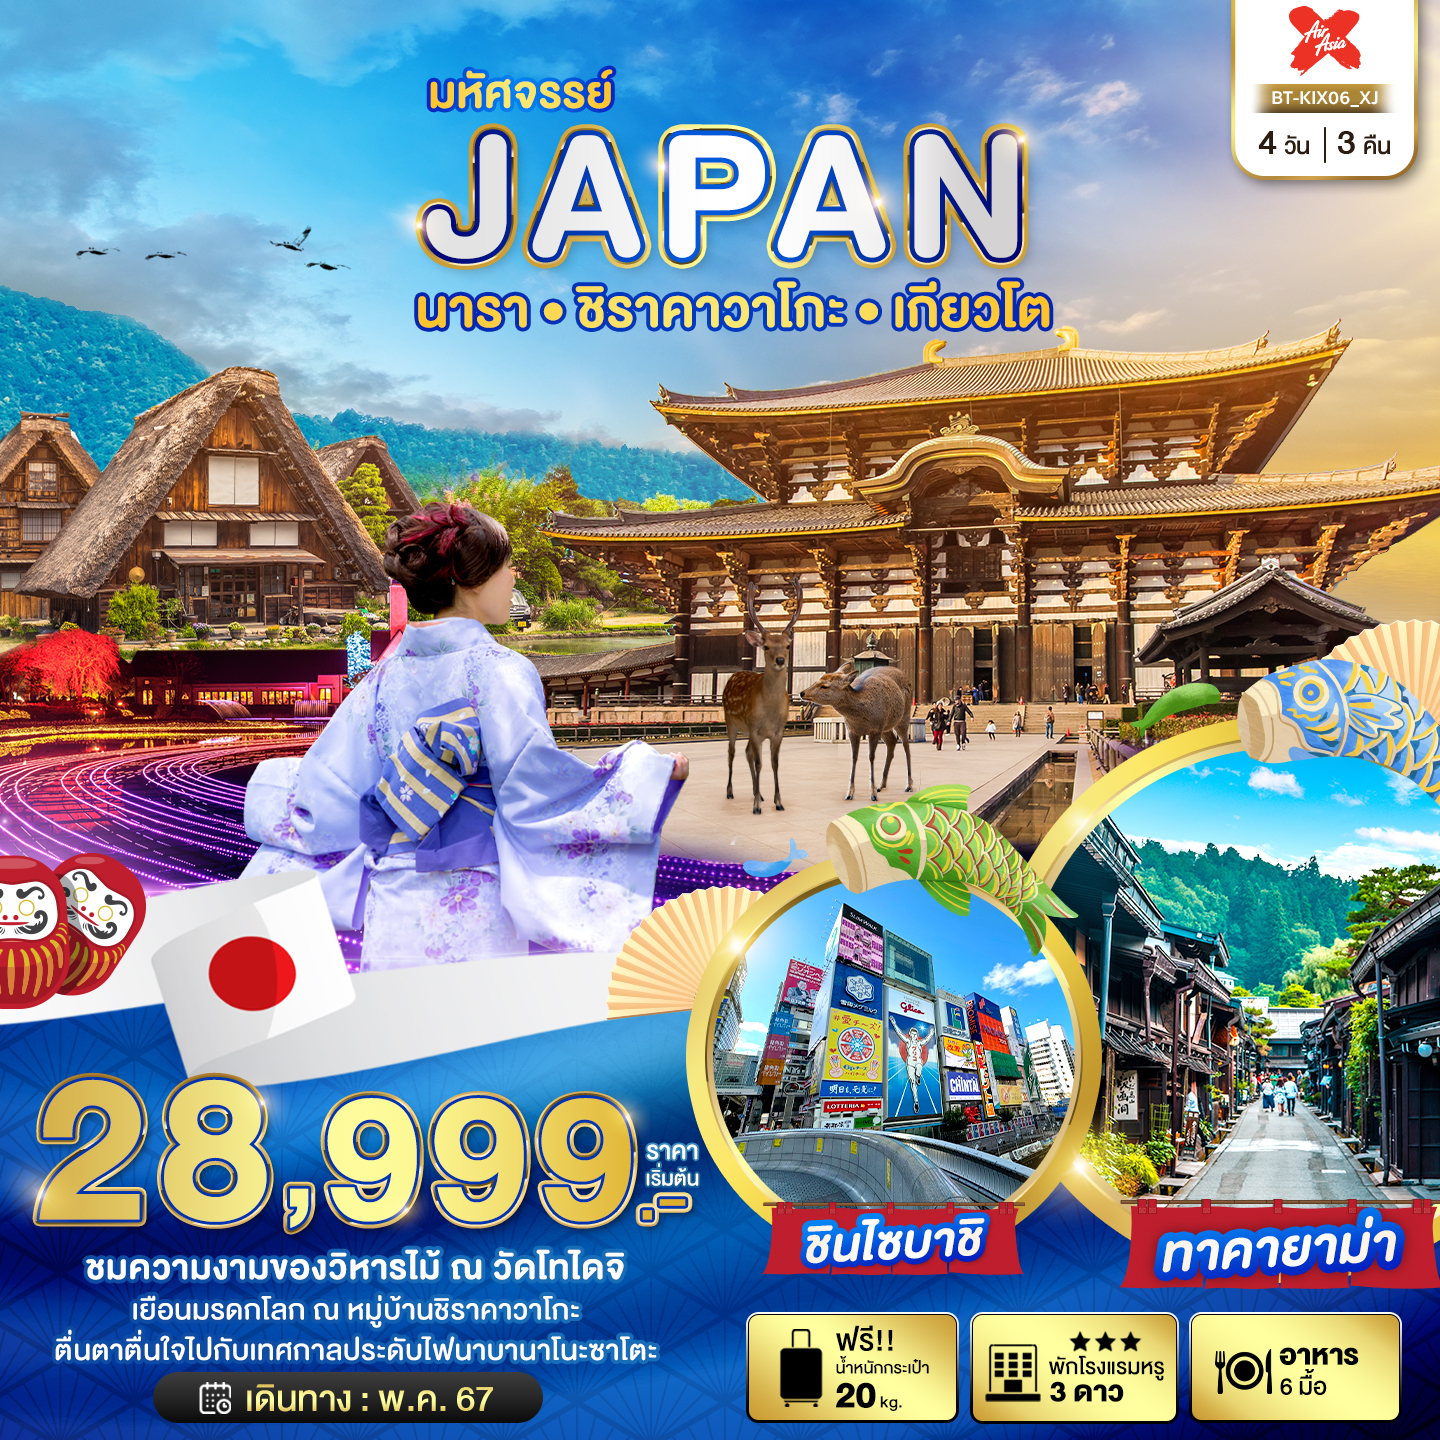 JAPAN ญี่ปุ่น นารา ชิราคาวาโกะ เกียวโต 5 วัน 3 คืน เดินทาง พฤษภาคม 67 เริ่มต้น 28,999.- Air Asia X (XJ)